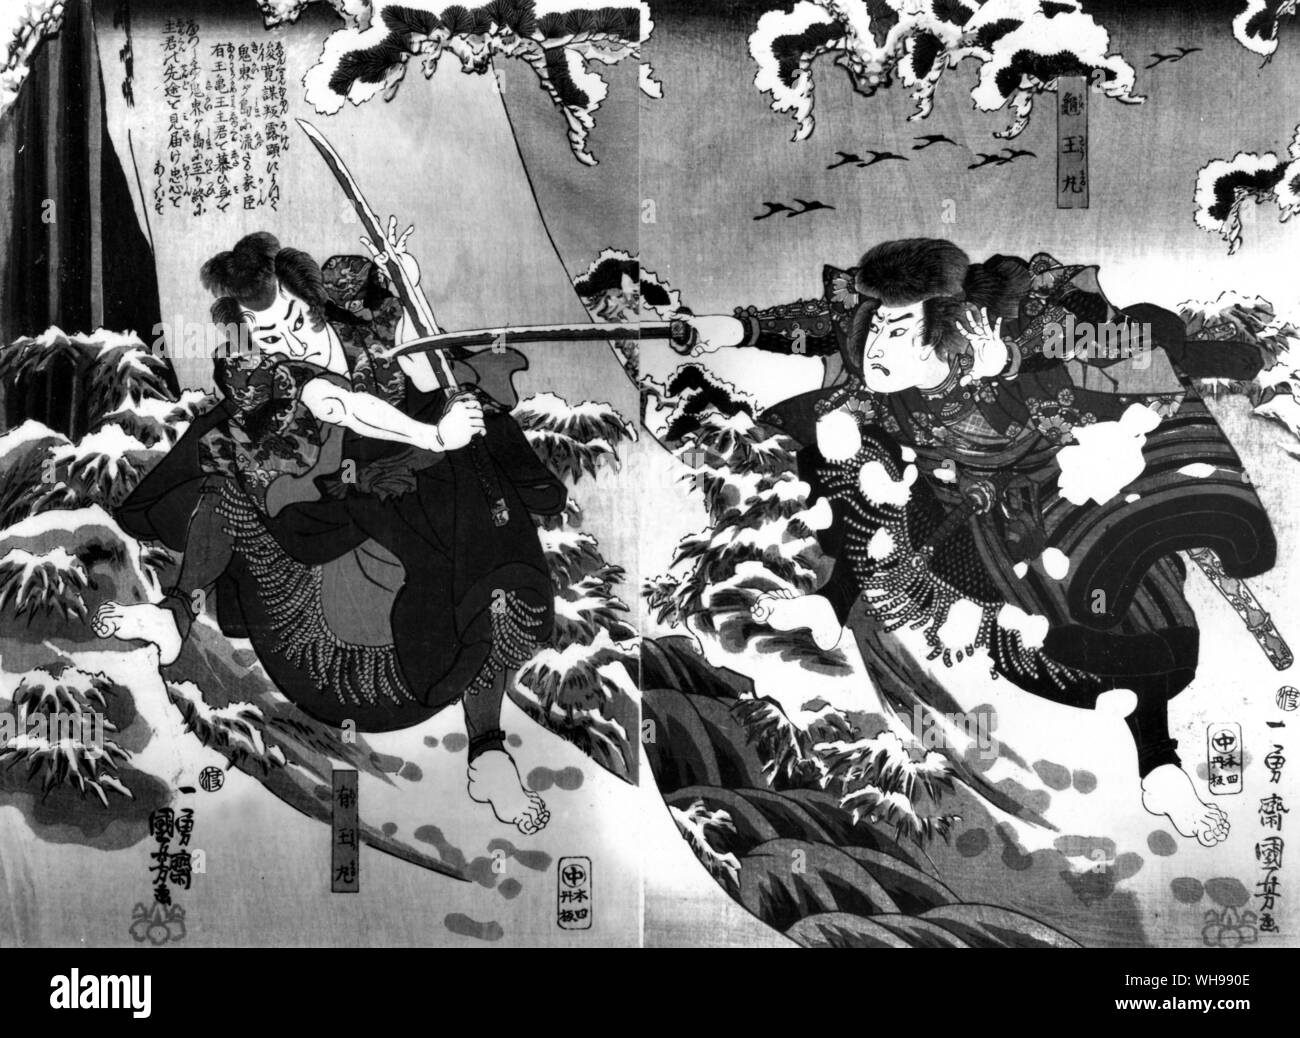 Östlichen Kriegsführung/Japan: Die Samurai großes Geschick im Kampf mit ihrer Single scharfkantigen konvexe Schwerter erworben.. Stockfoto